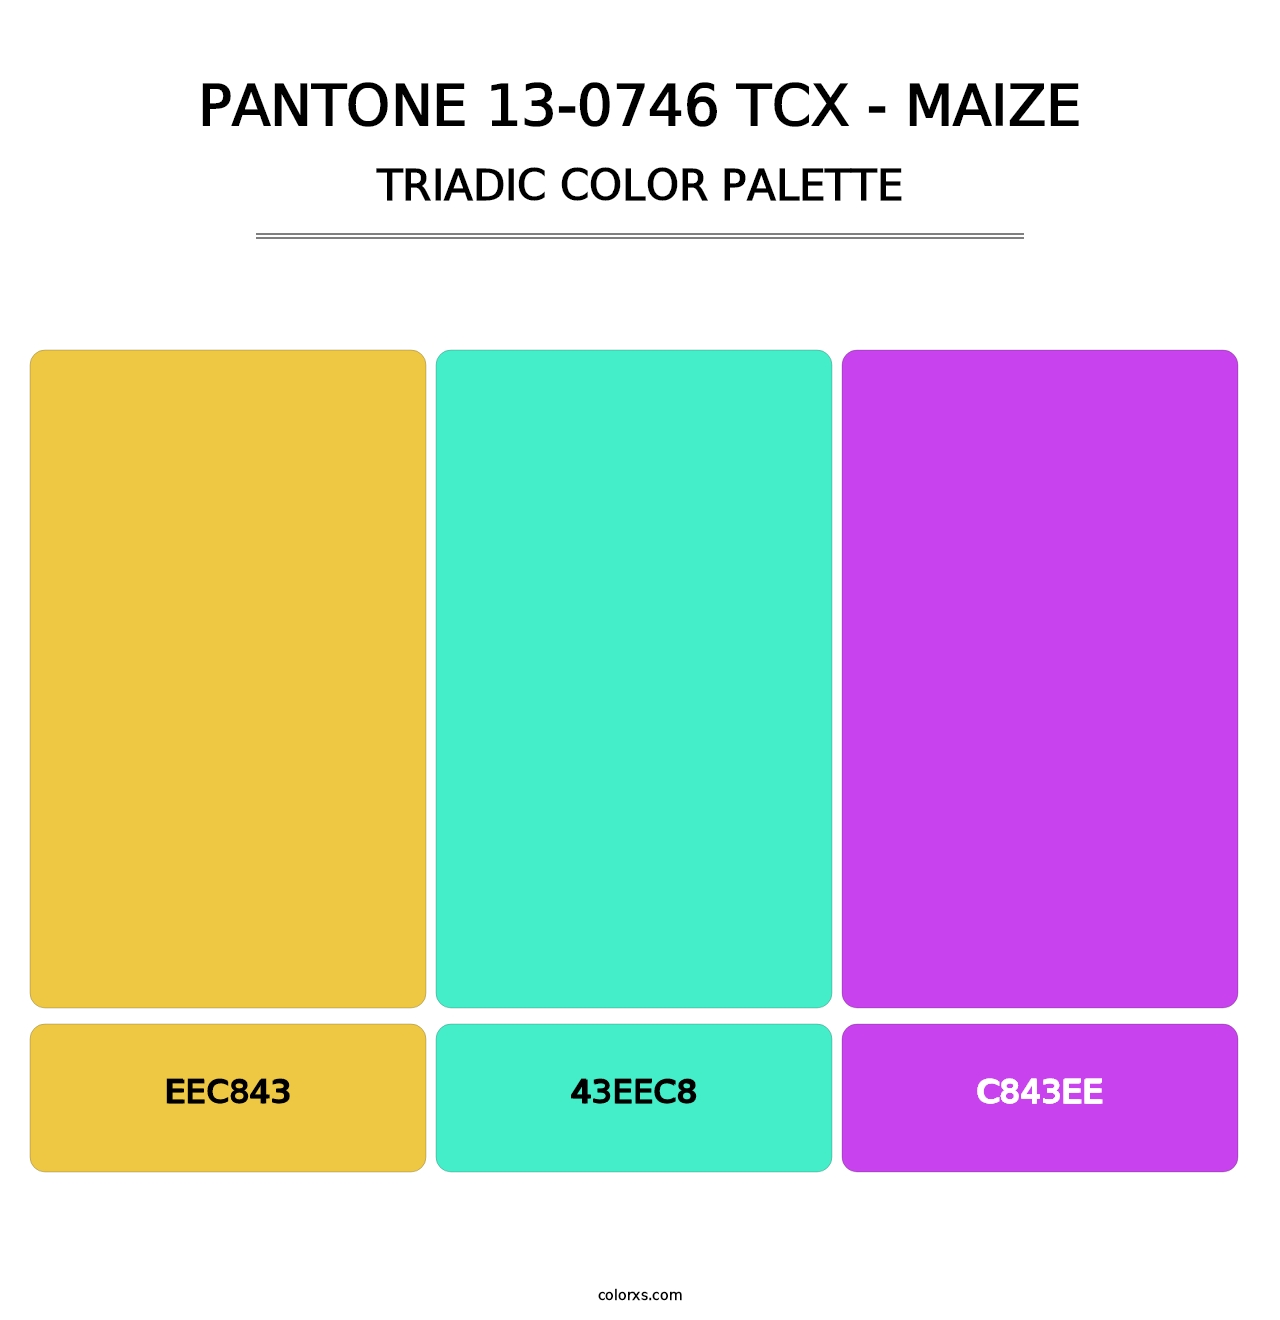 PANTONE 13-0746 TCX - Maize - Triadic Color Palette